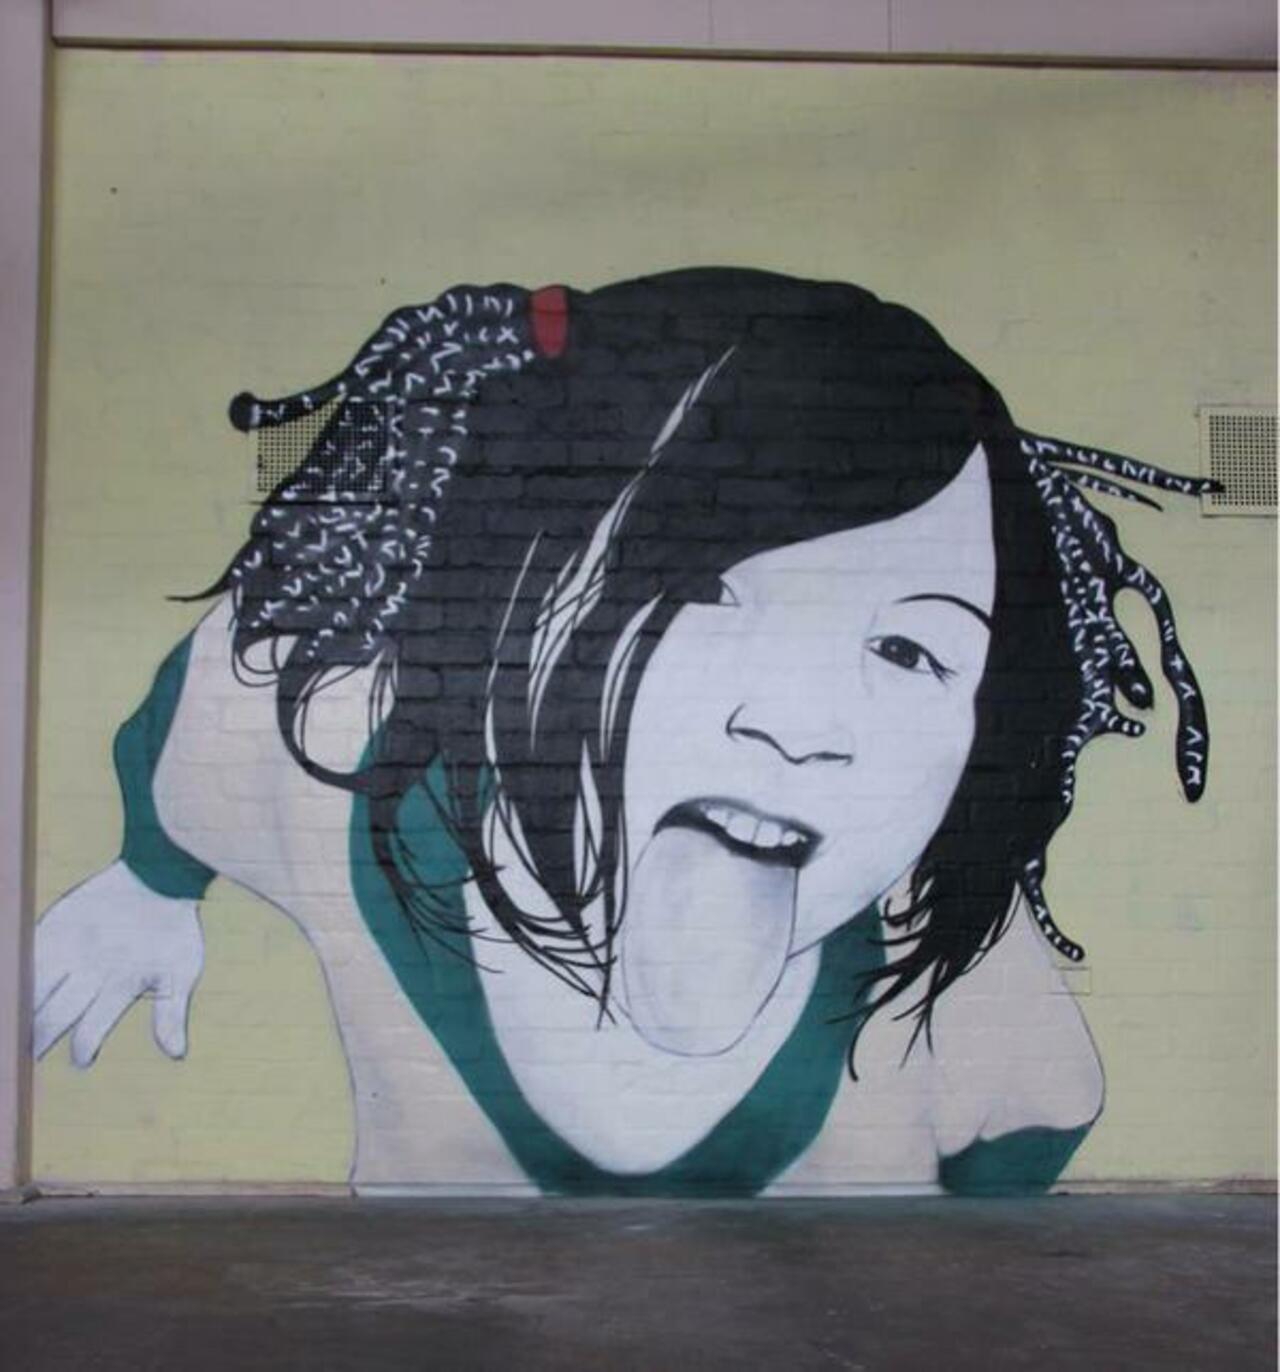 RT @streetartkami: Street Art by the artist 'Be Free'

#art #arte #graffiti #streetart http://t.co/hb2ZQmnm7B